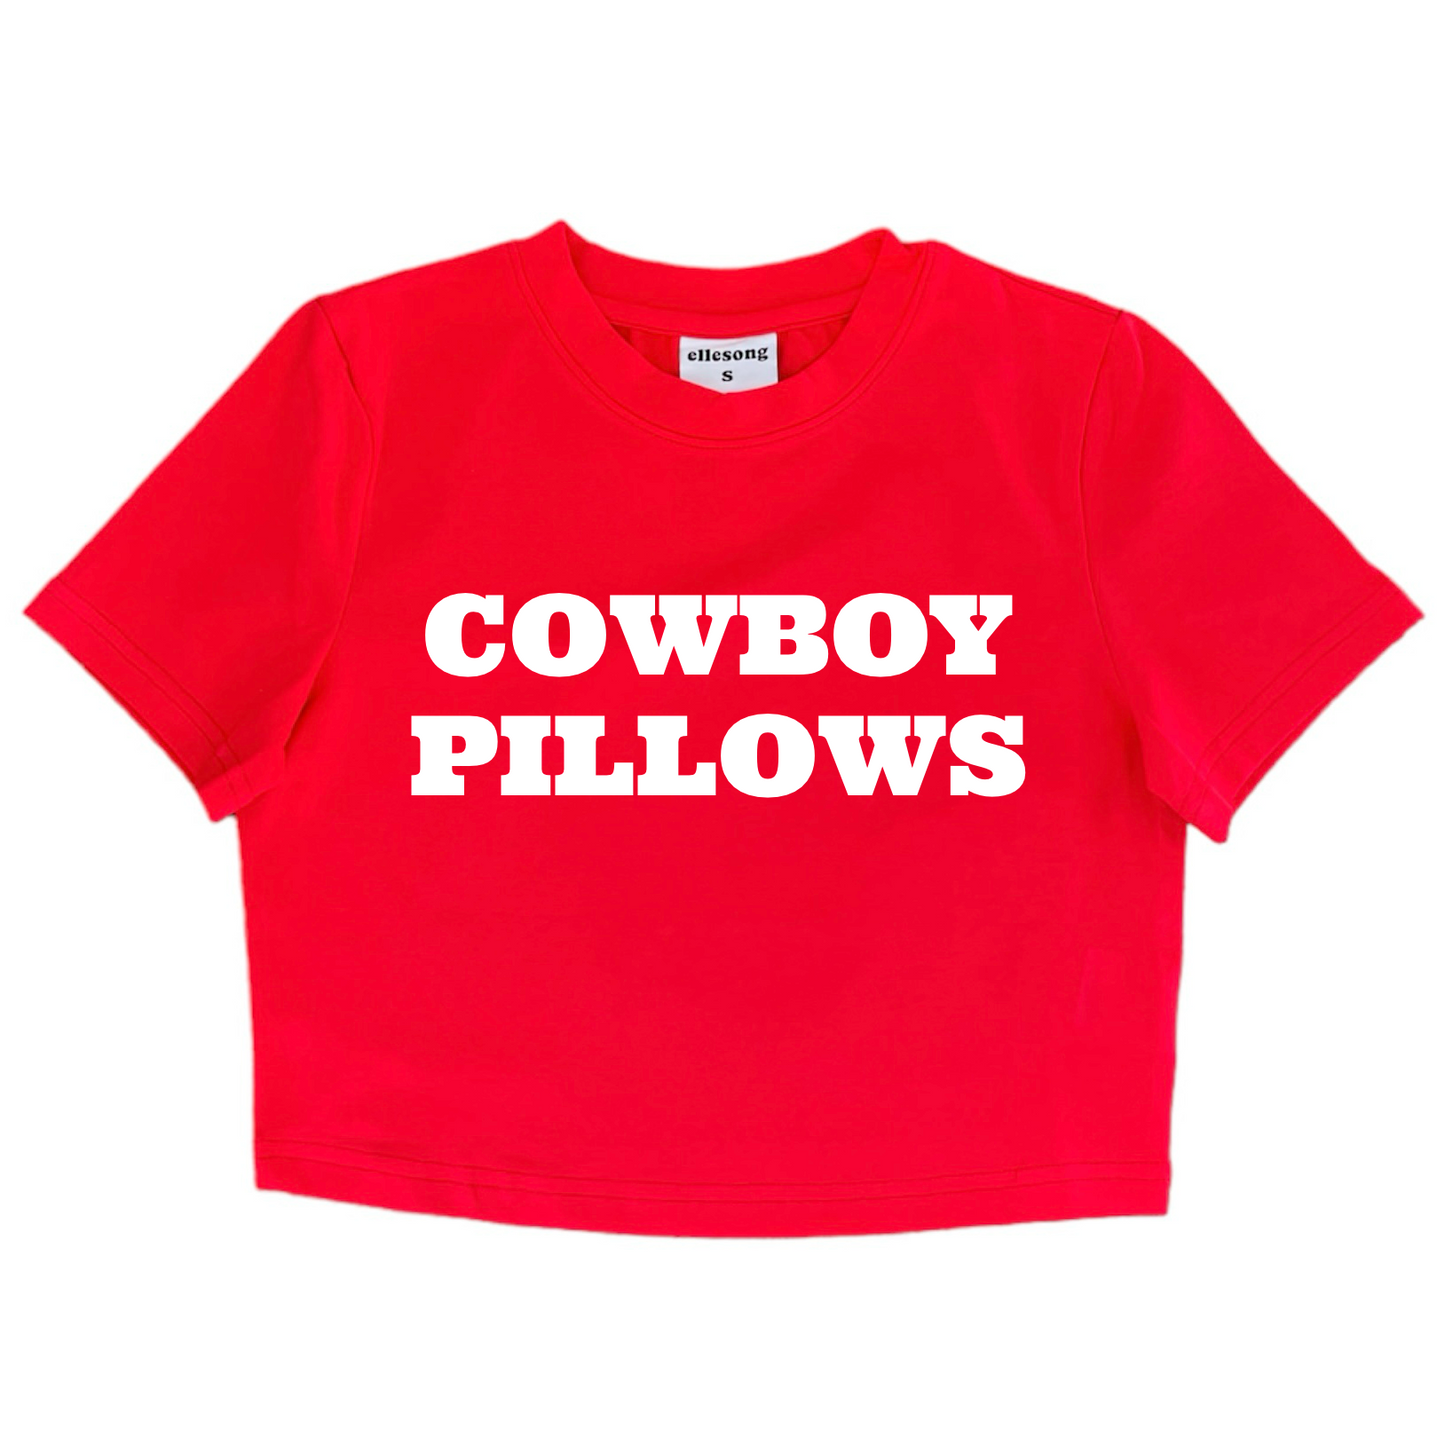 Cowboy Pillows Baby Tee